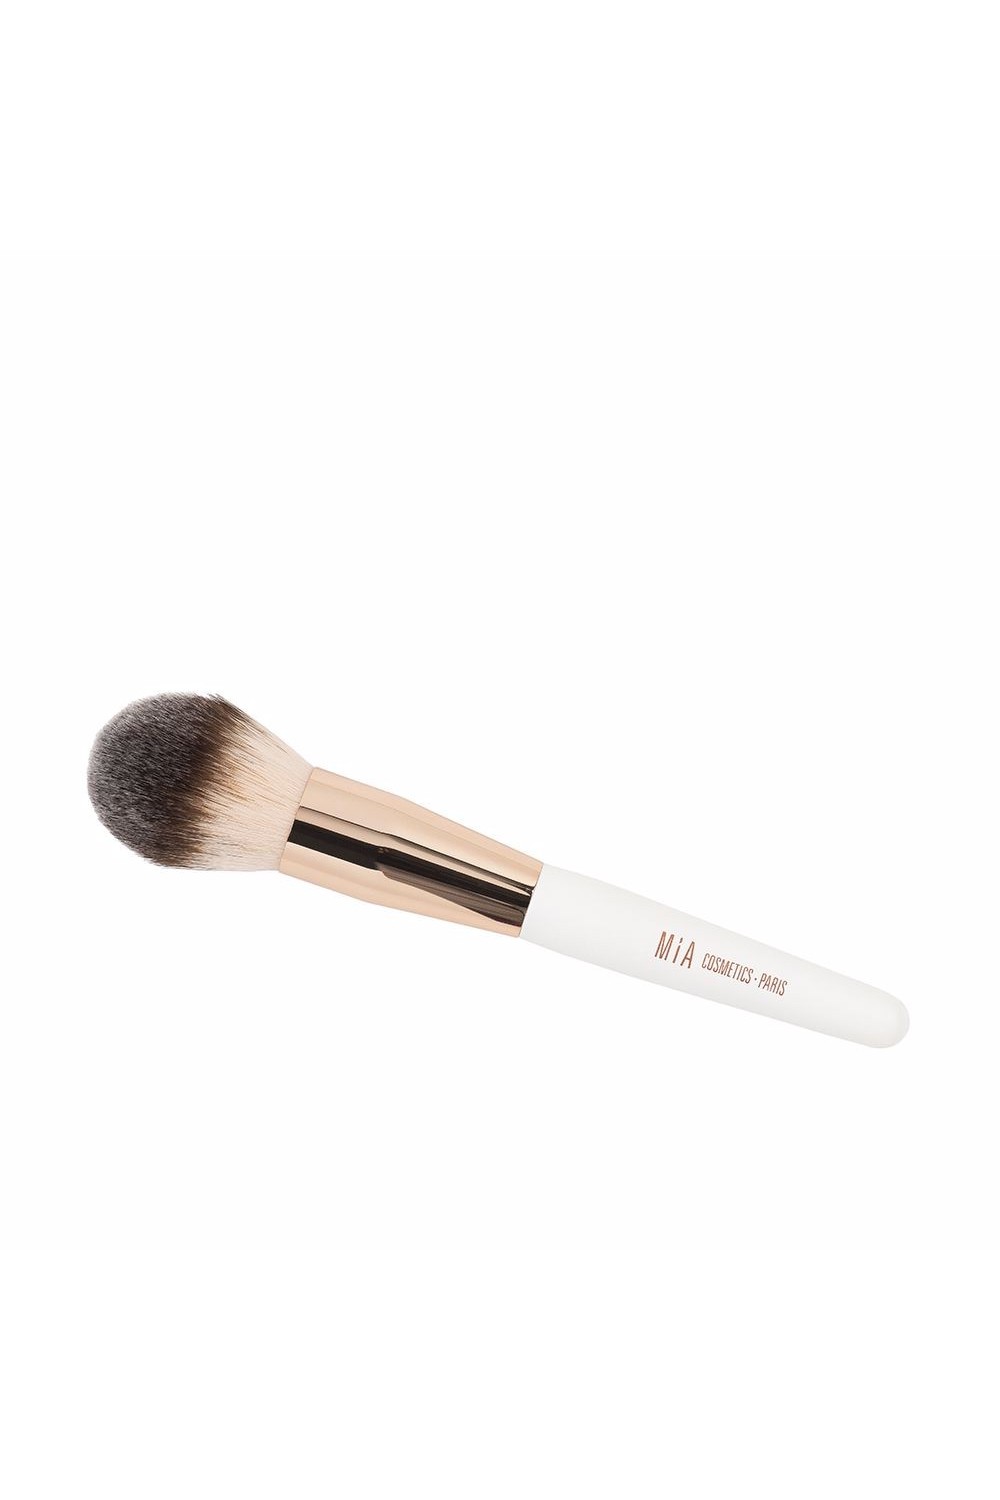 MÍA - Mía Cosmetics Powder Makeup Brush